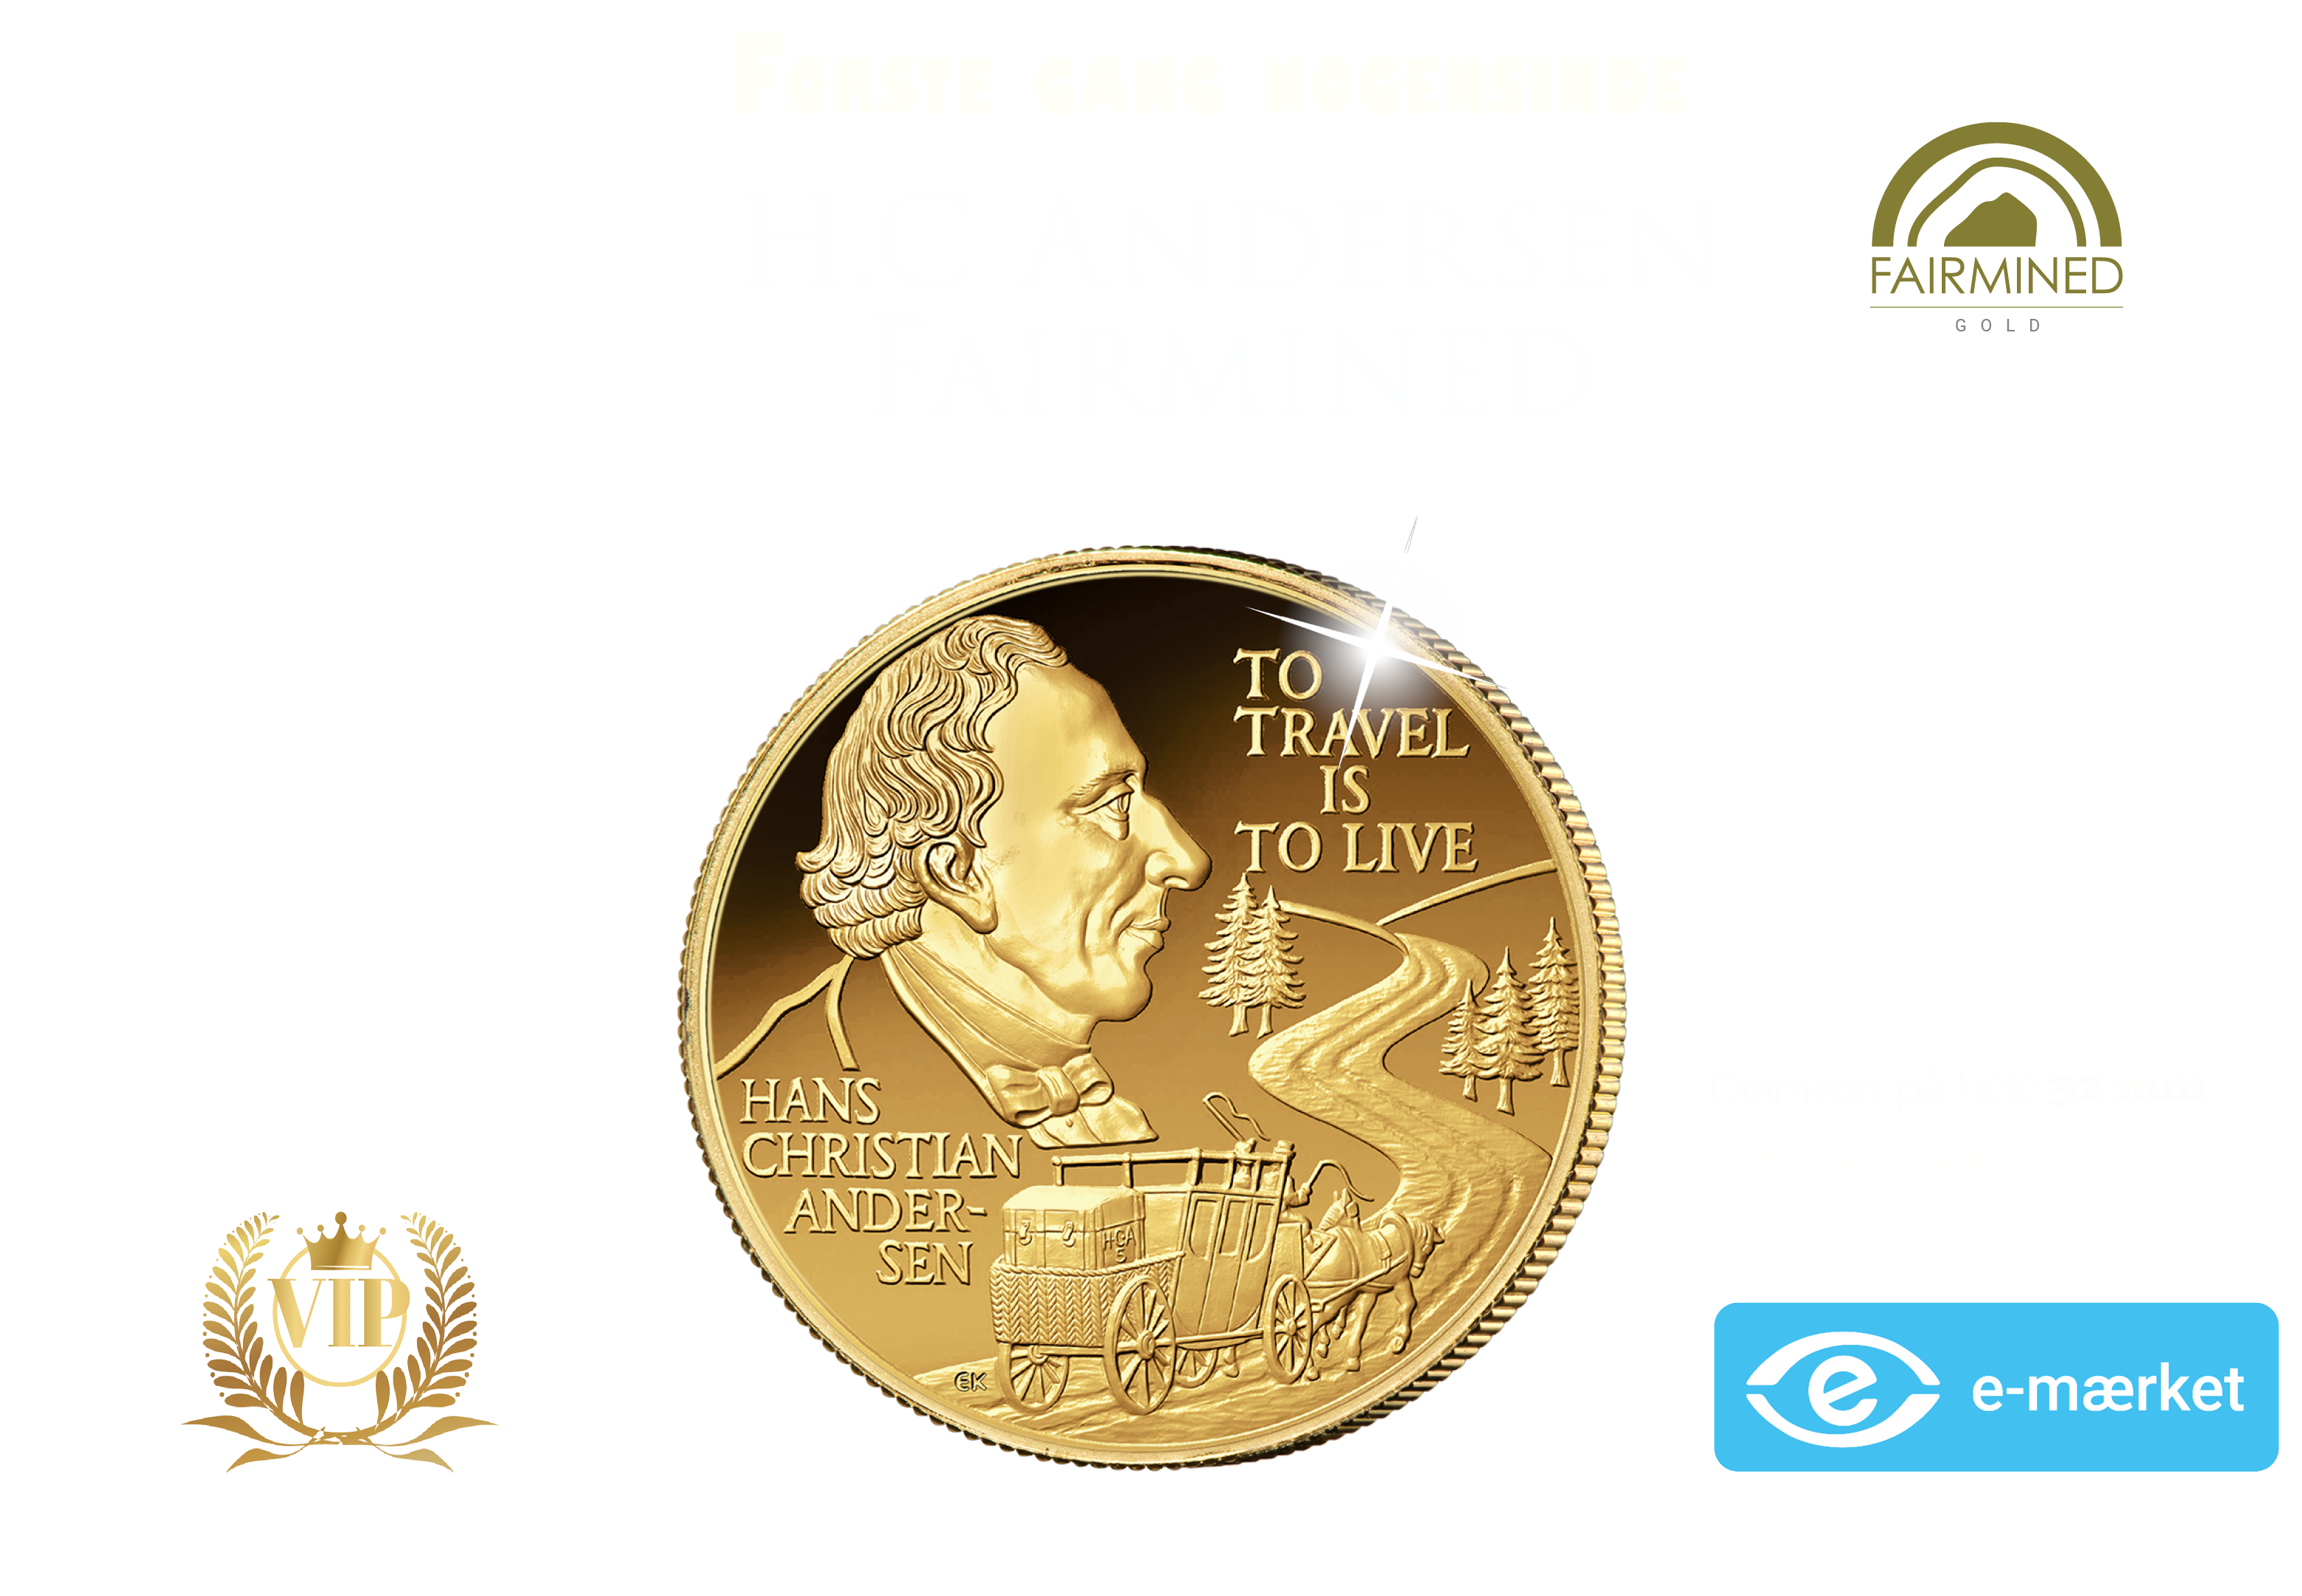 Den første Fairmined guldmønt med motiv af H.C. Andersen nogensinde!